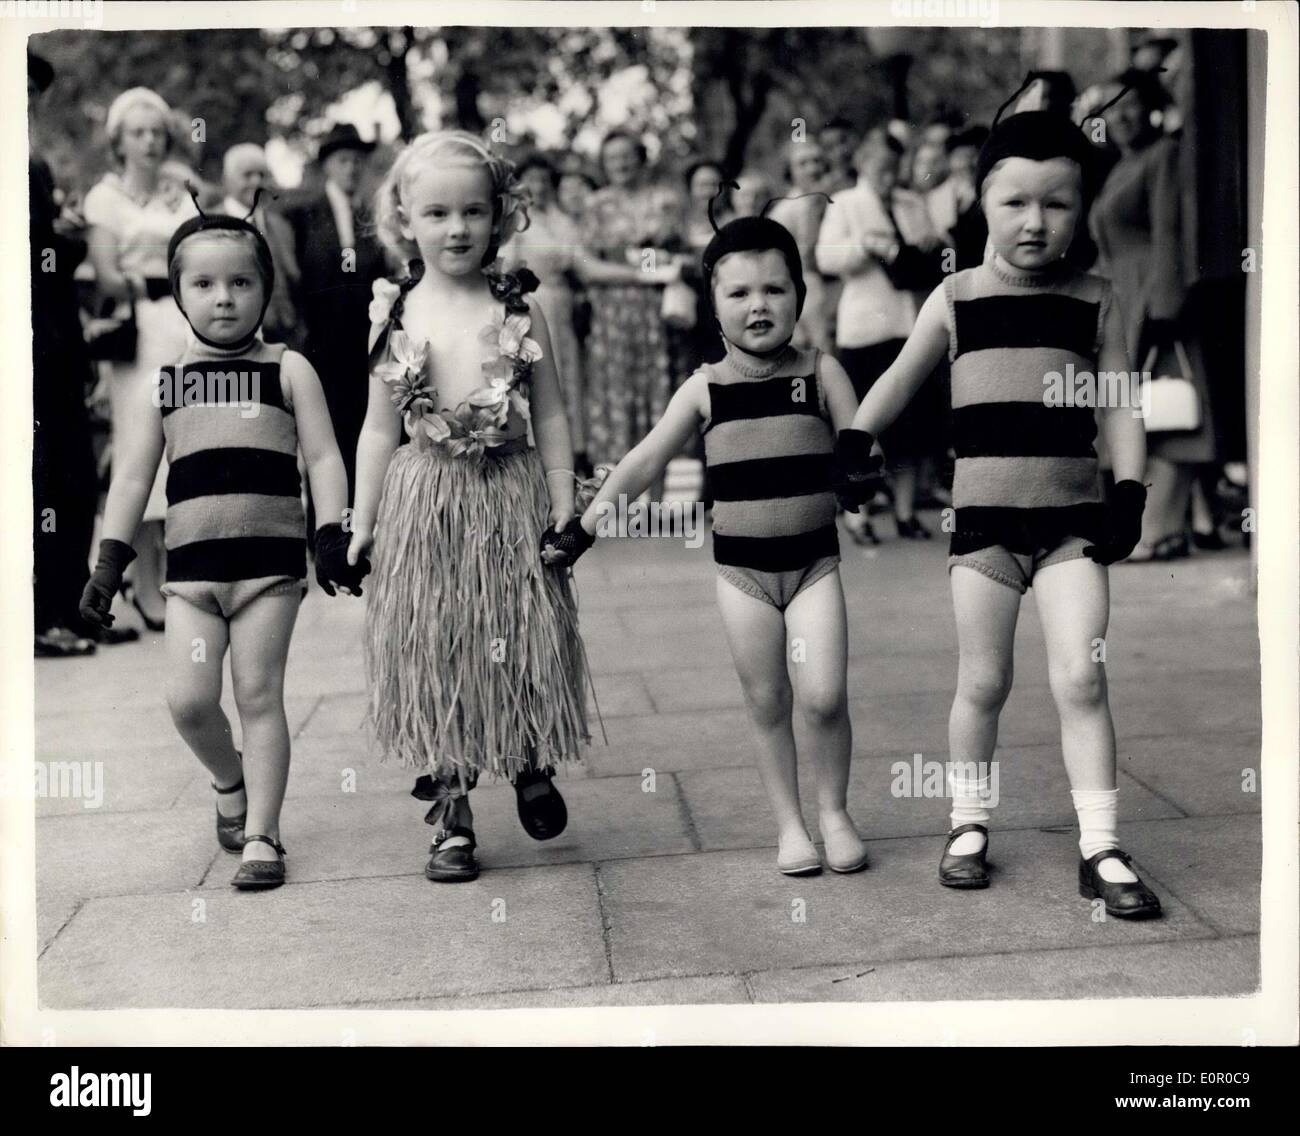 Jul 09, 1957 - Children's Charity bailando Matinee cuatro jóvenes llegan: La fotografía muestra cuatro jóvenes que llegan a la princesa Foto de stock